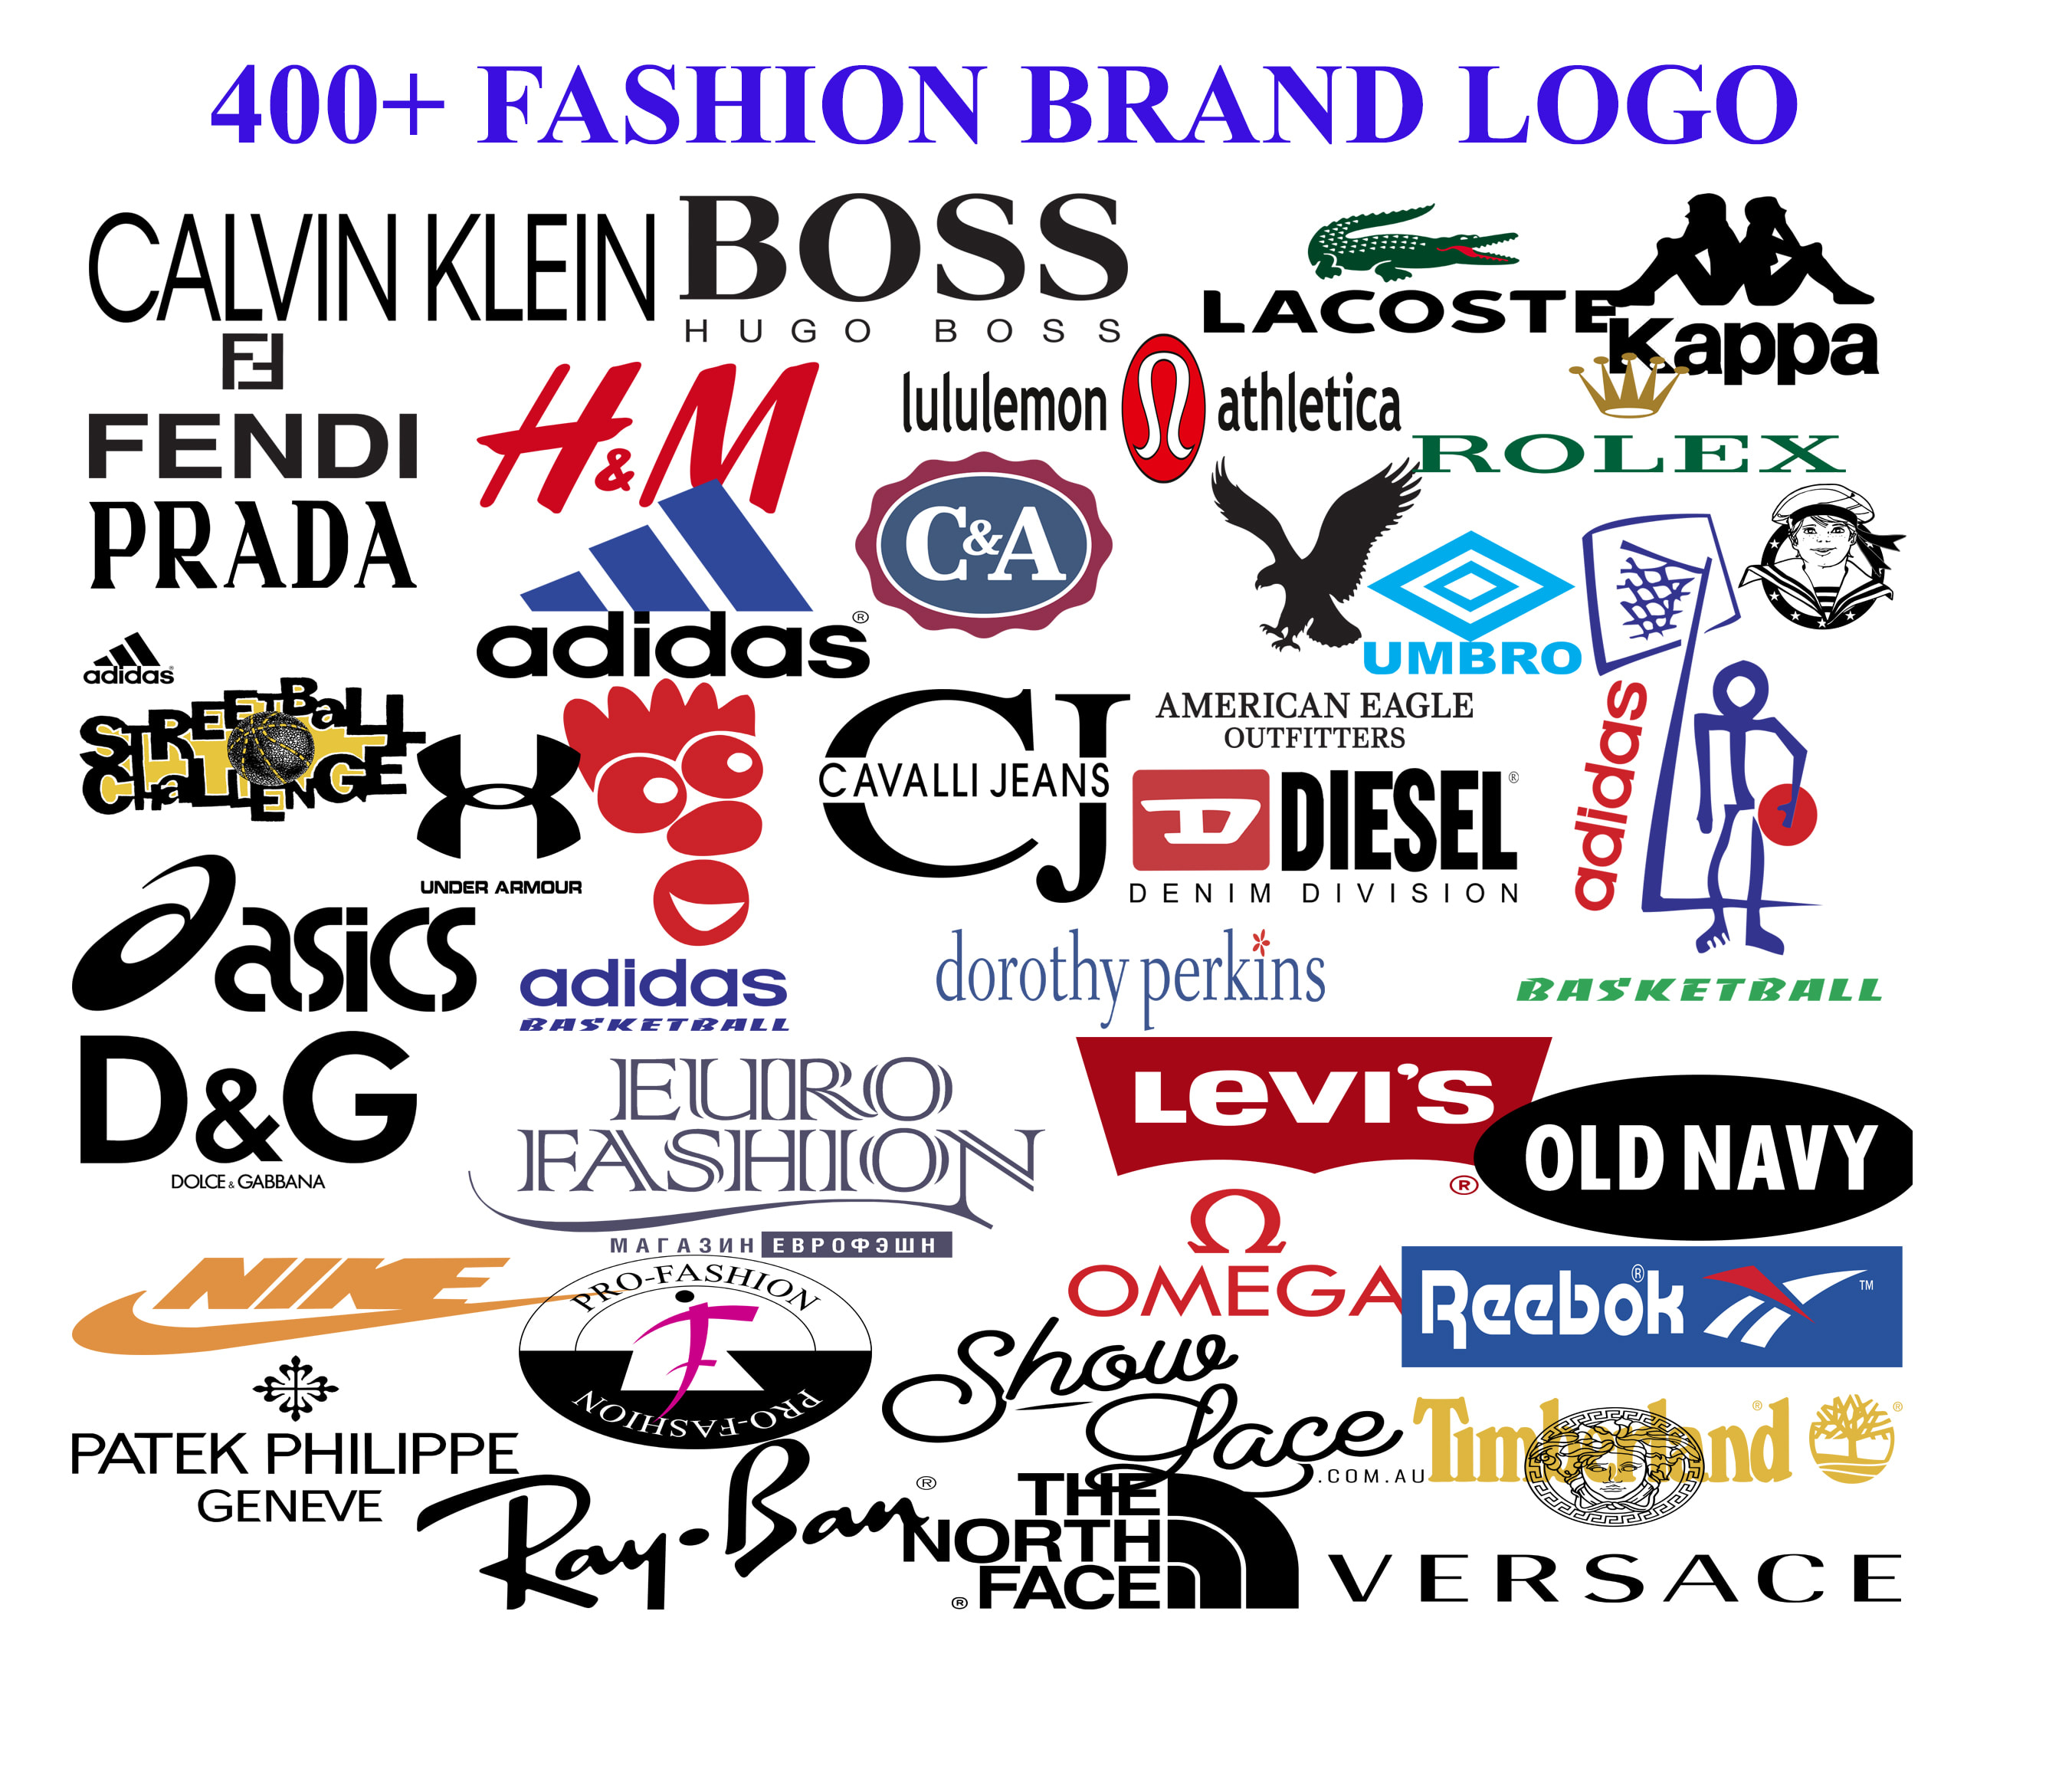 Clothing Brands  Clothing brand logos, Fashion branding, Fashion